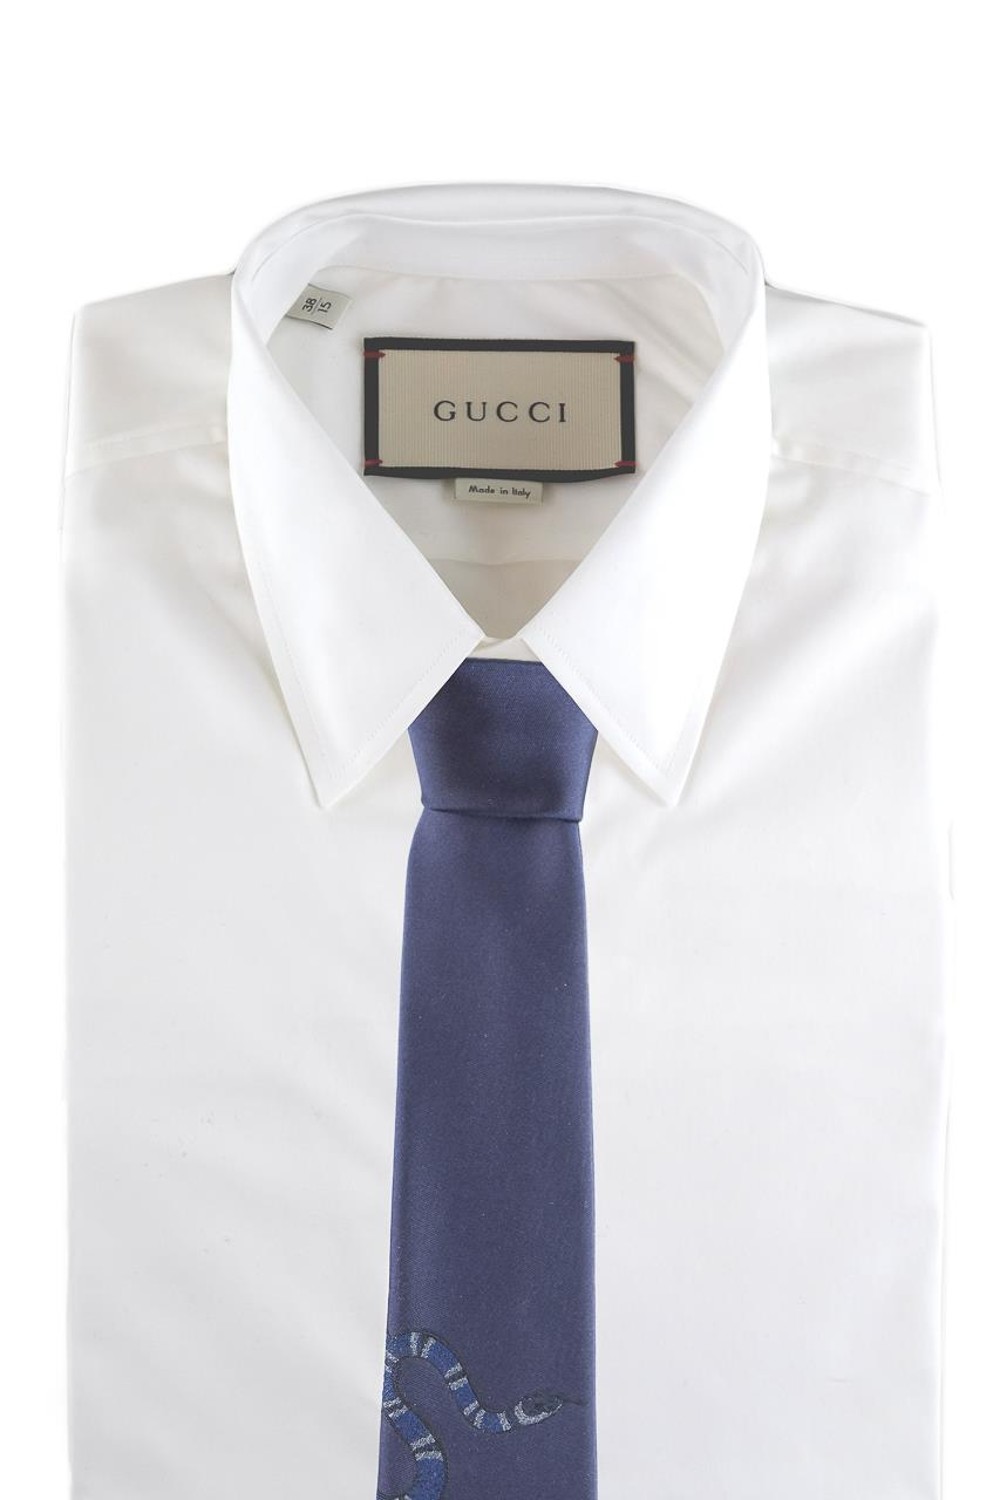 shop GUCCI Saldi Cravatta: Gucci cravatta blu in seta con Kingsnake sottonodo.
Kingsnake tono su tono.
L 7cm x A 146cm.
100% seta.
Made in Italy.. 495304 4E011-4000 number 5432977